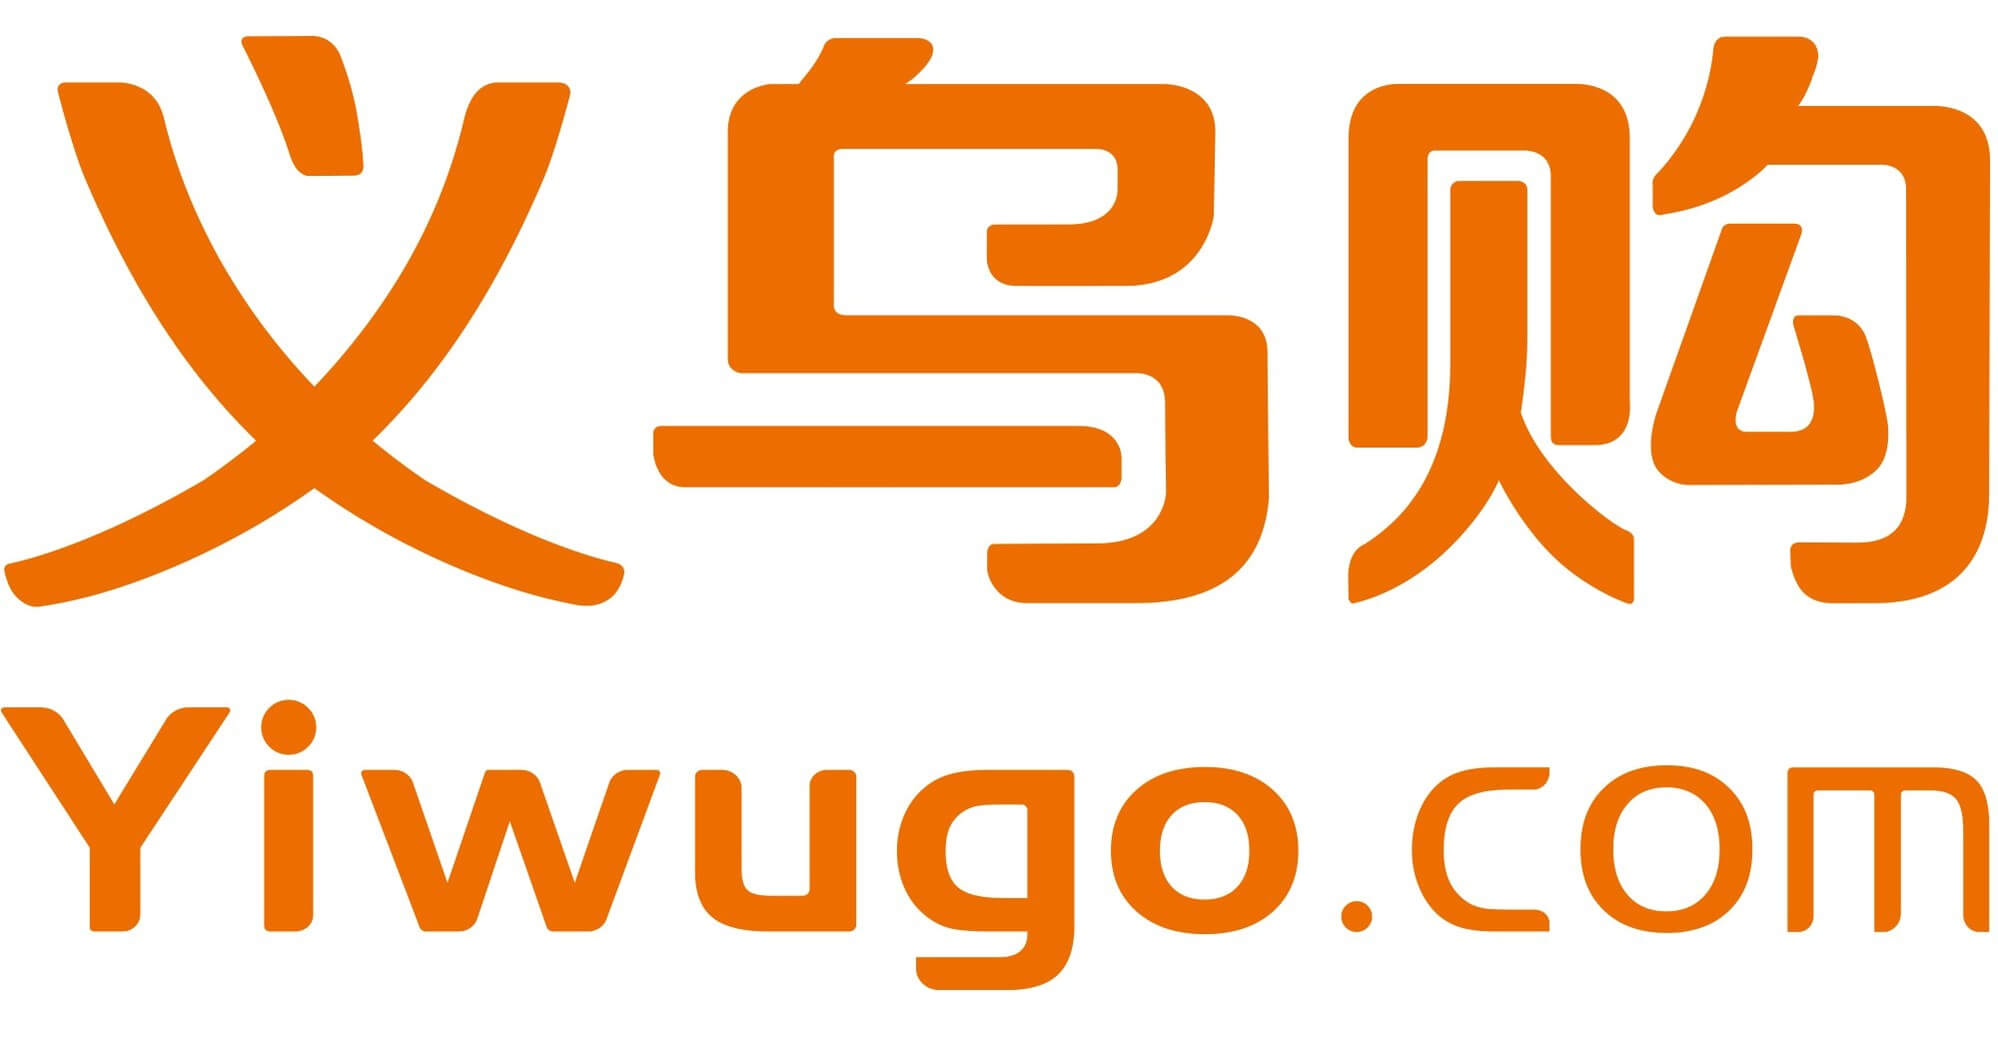 Acheter sur Yiwugo.com sans risques en 2023 : Tutoriel pas à pas